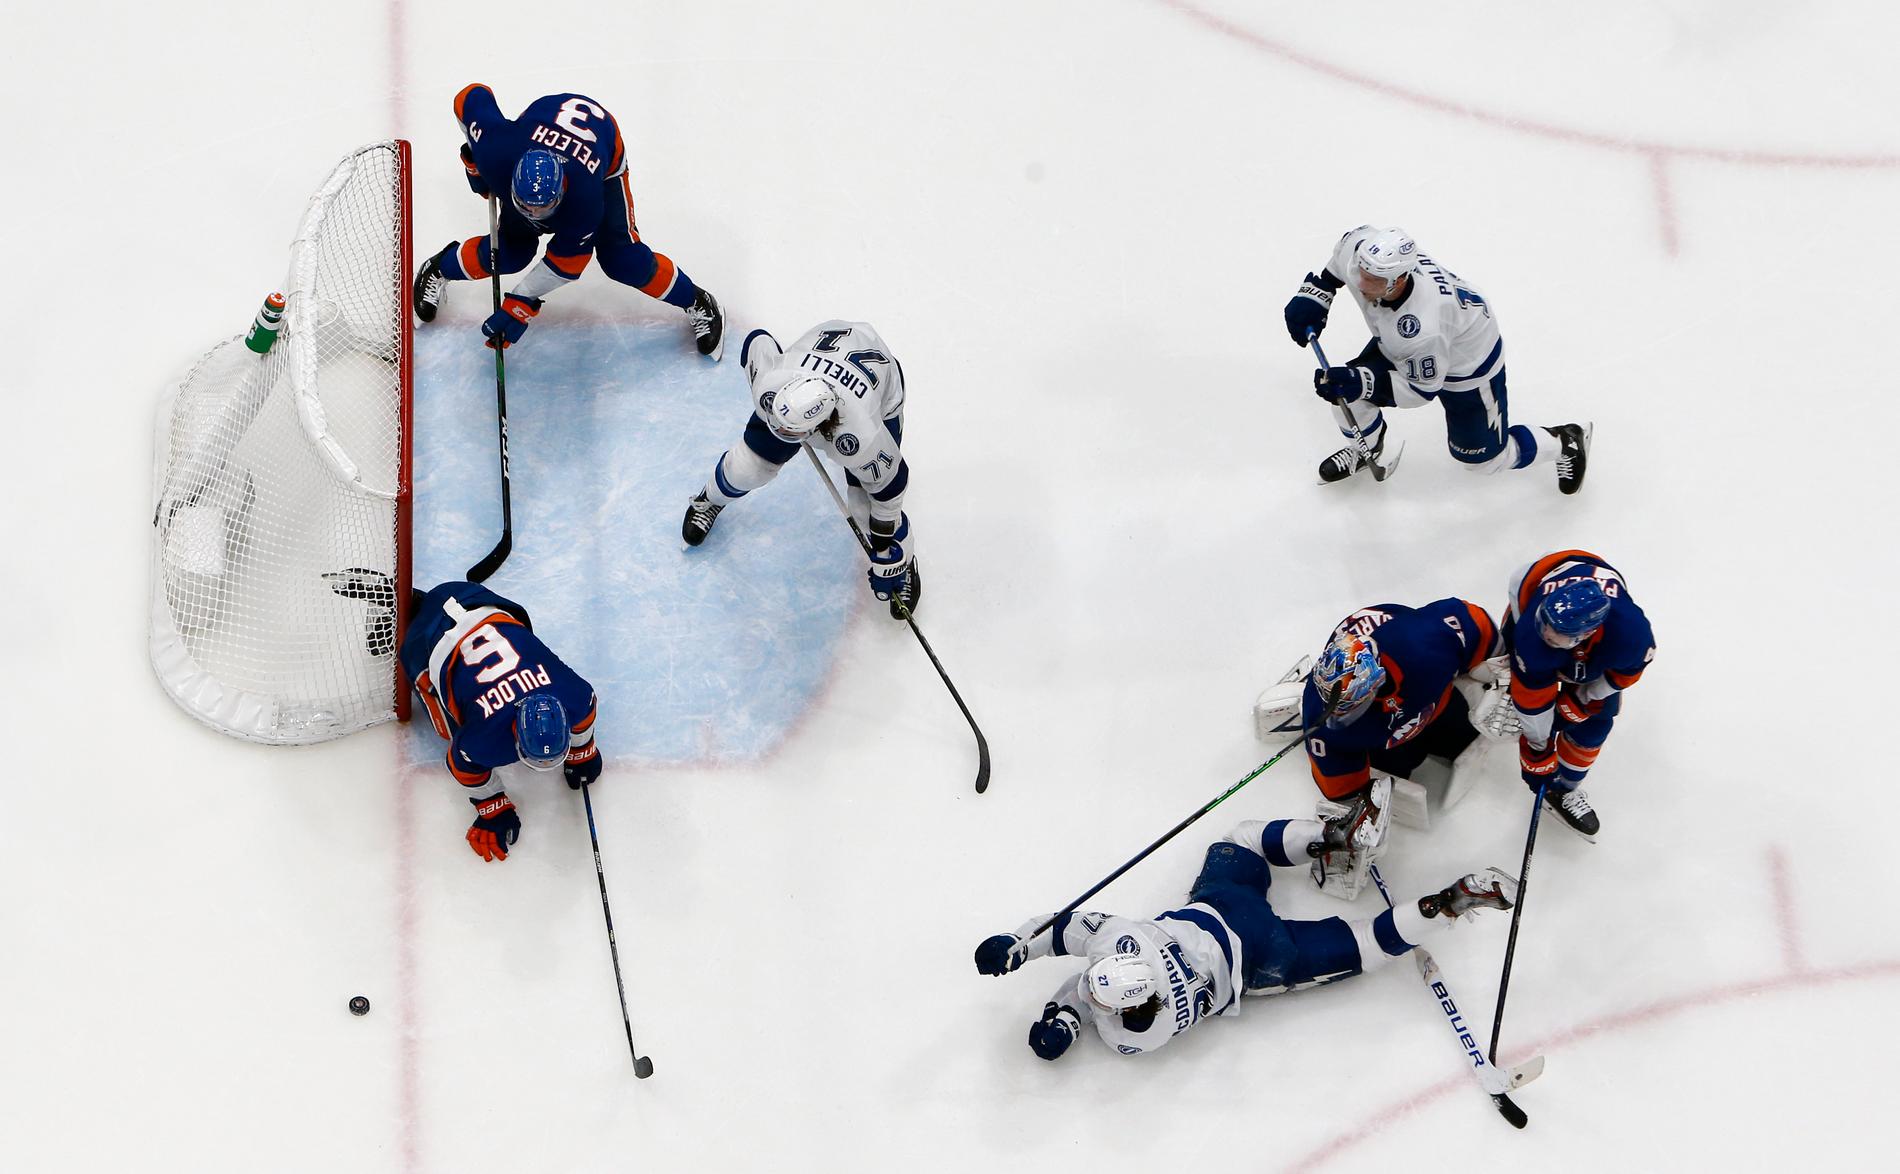 New York Islanders försvarare Ryan Pulock (6) blockerade ett skott från Tampa i slutsekunderna, efter att målvakten Semjon Varlamov råkat lämna målburen fri.